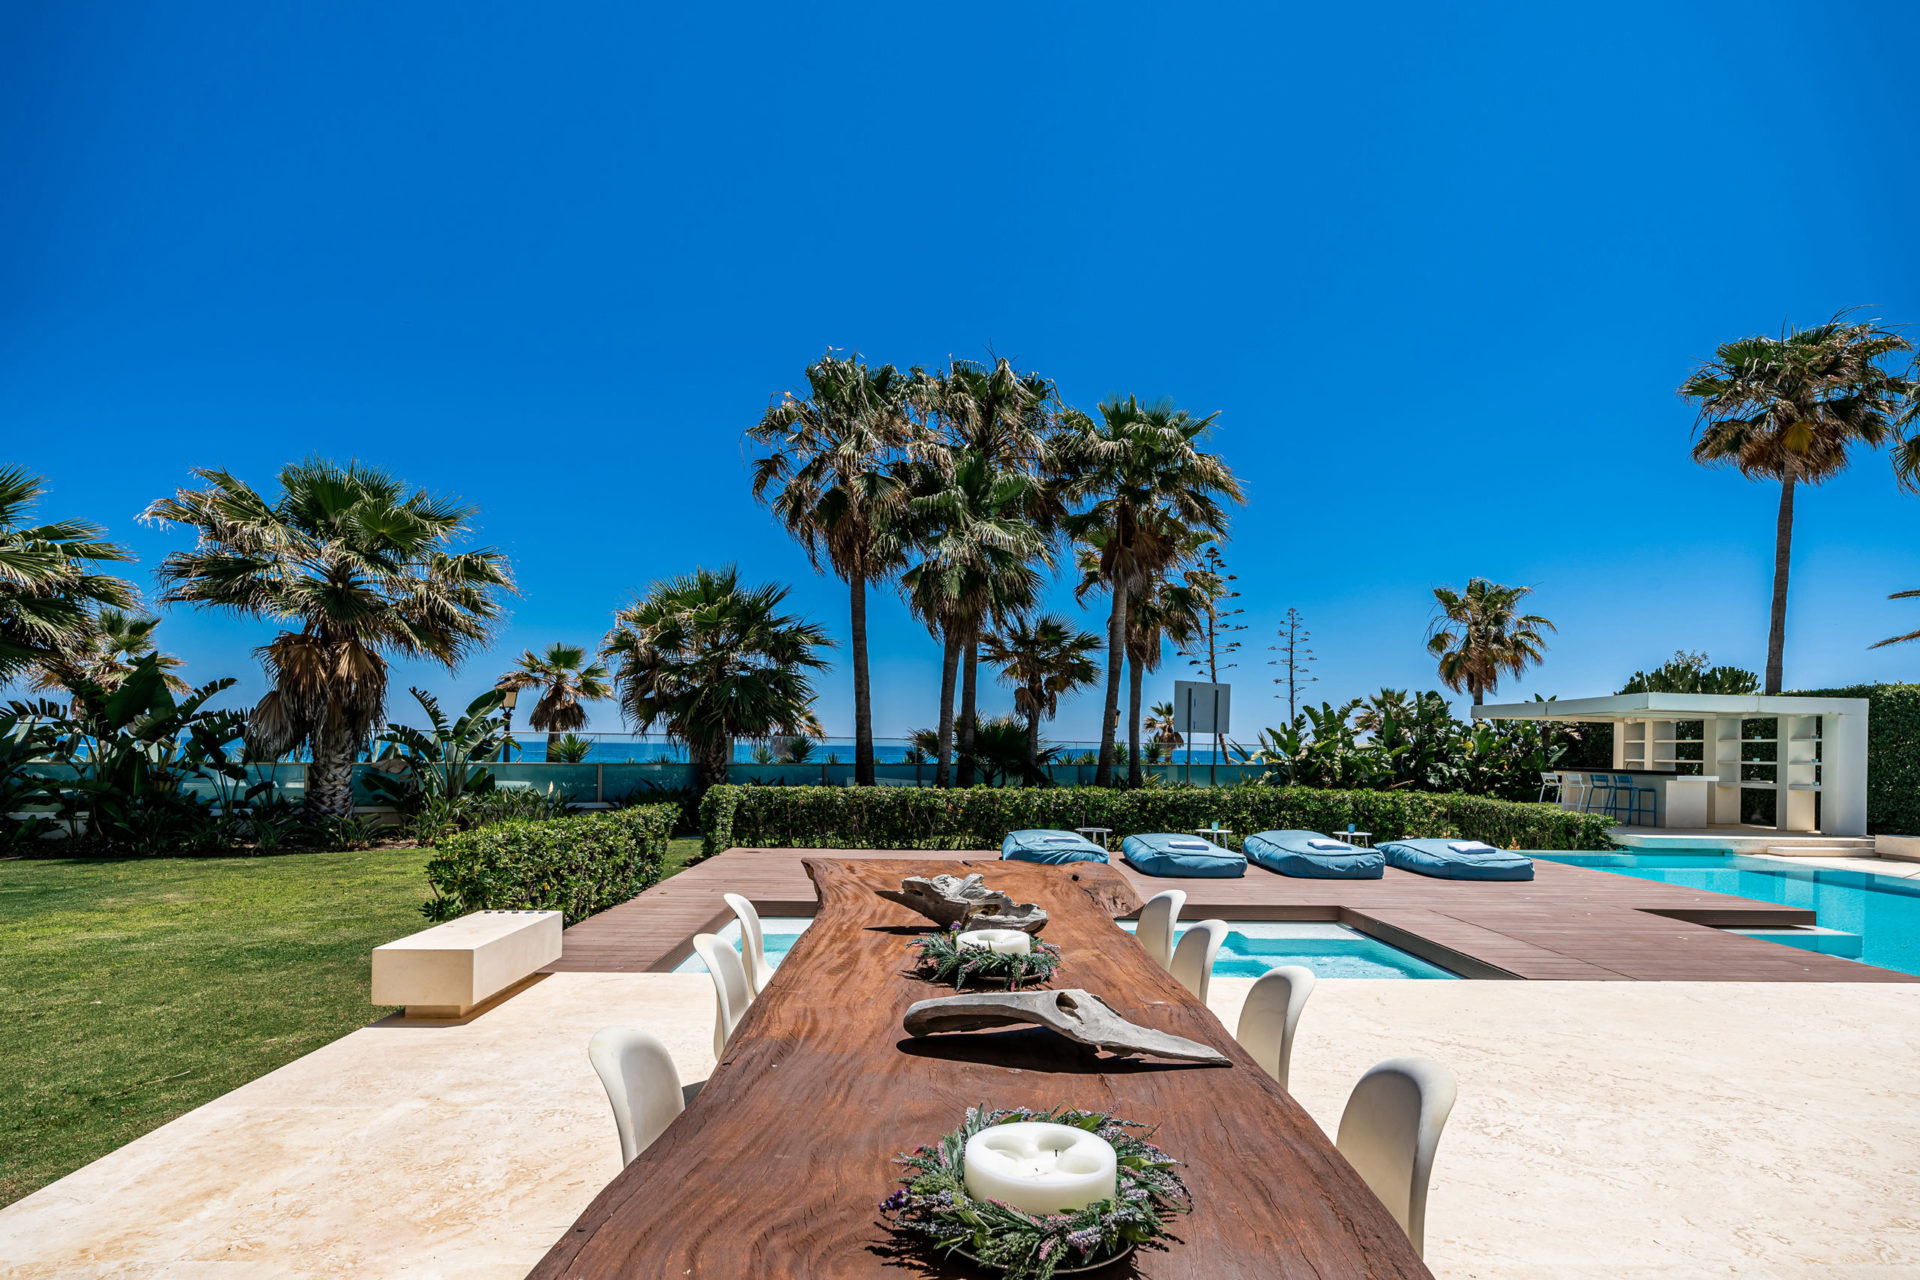 Engel Volkers Marbella Luxury Real Estate Agency In Marbella